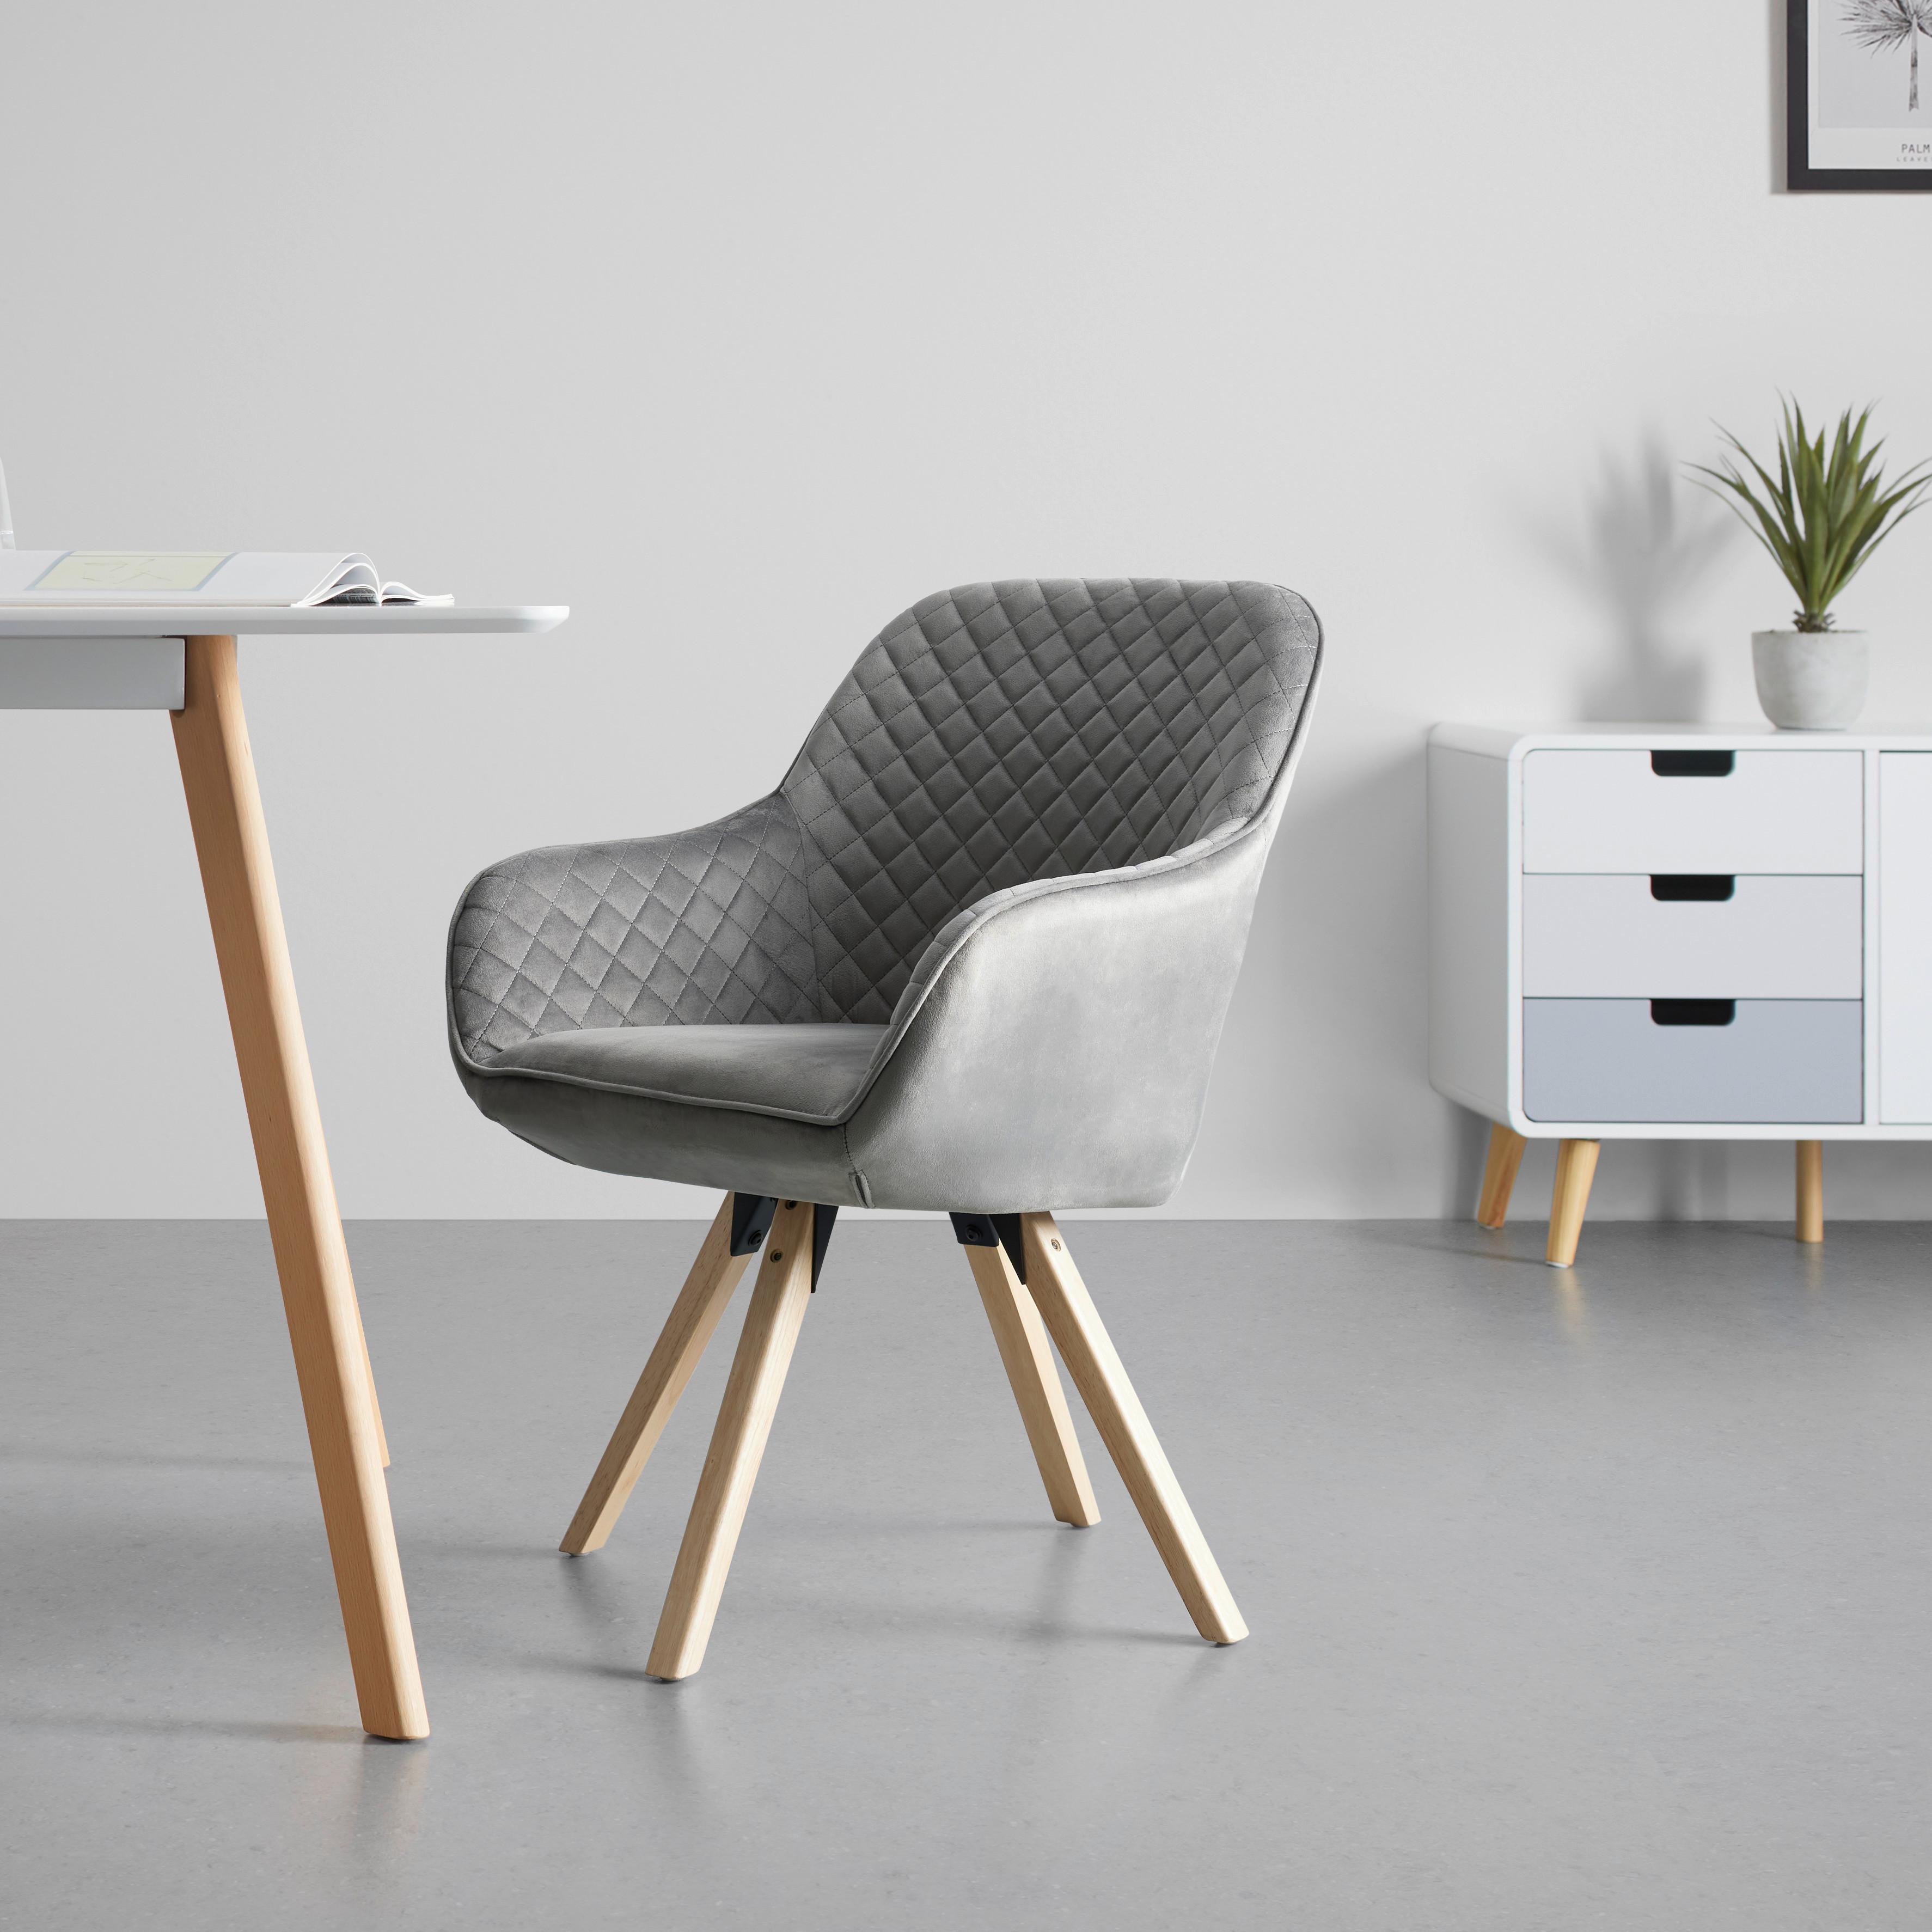 Židle S Područkami Bago - šedá/přírodní barvy, Moderní, dřevo/textil (58/85/57cm) - Based